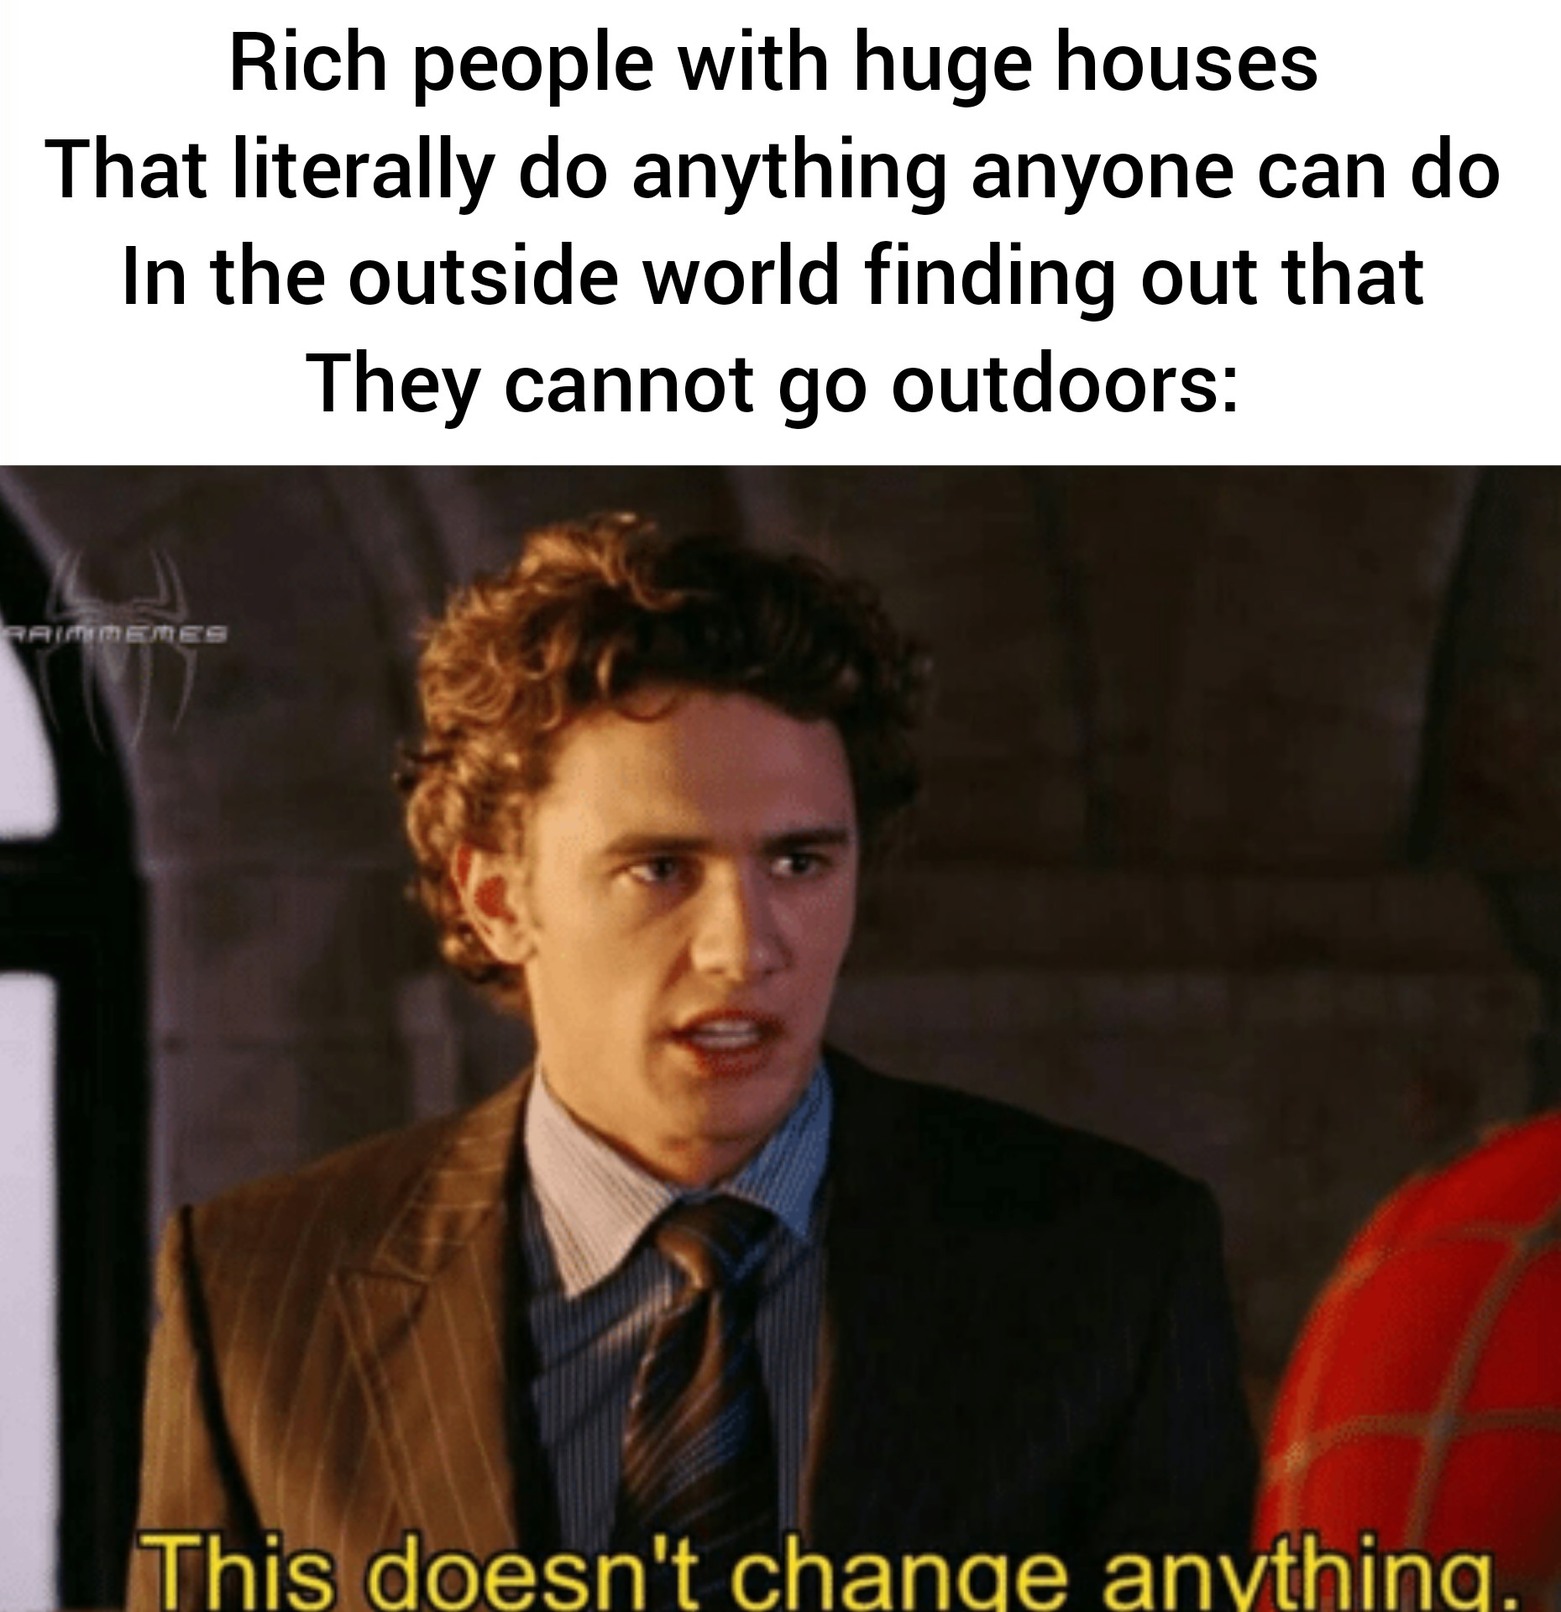 rich people be like meme